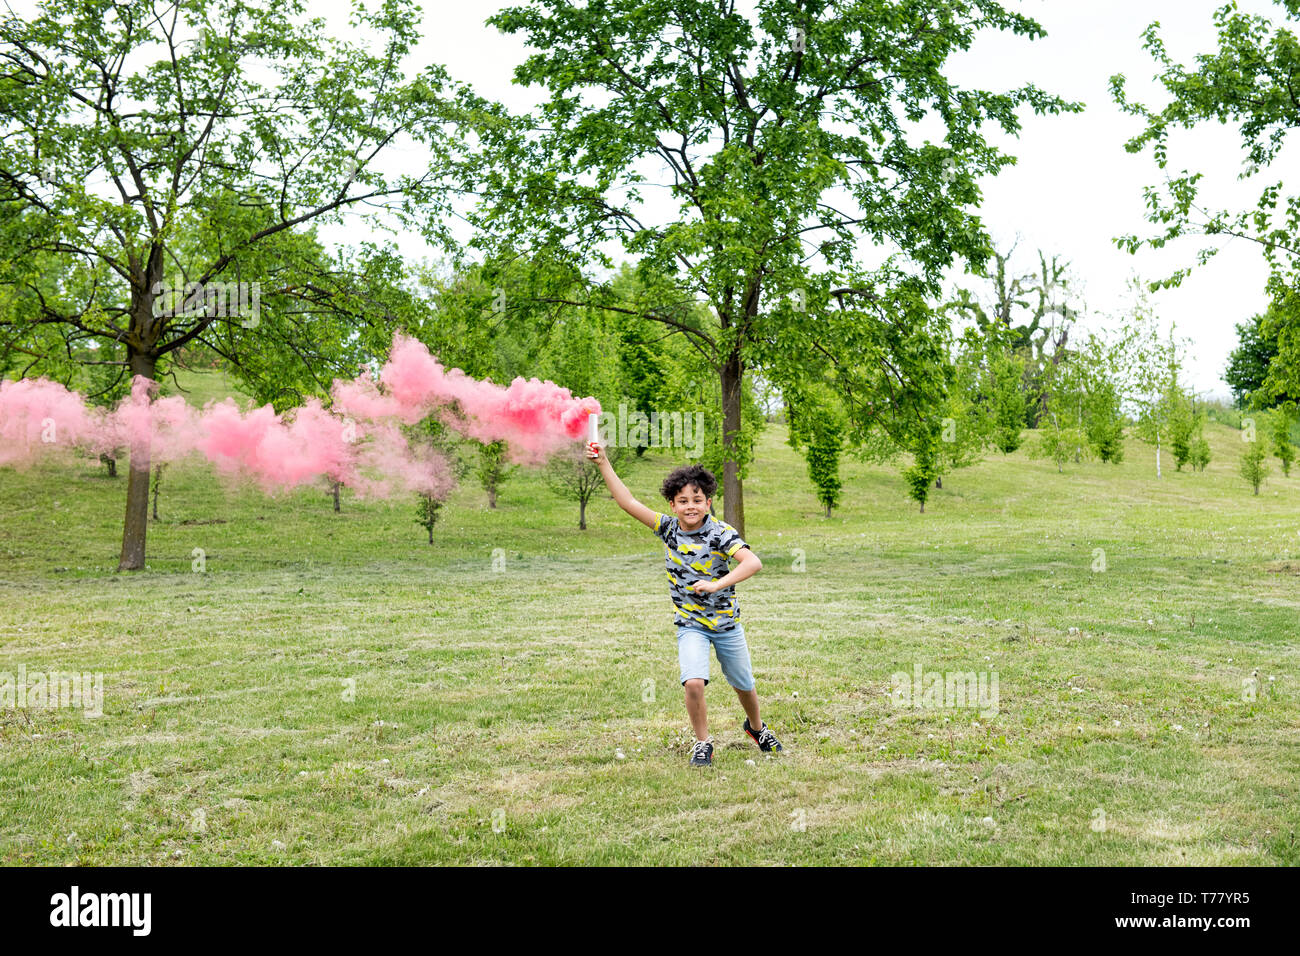 Giovane ragazzo in esecuzione attraverso un parco in primavera si trascina un fumo rosa flare dietro di lui Foto Stock